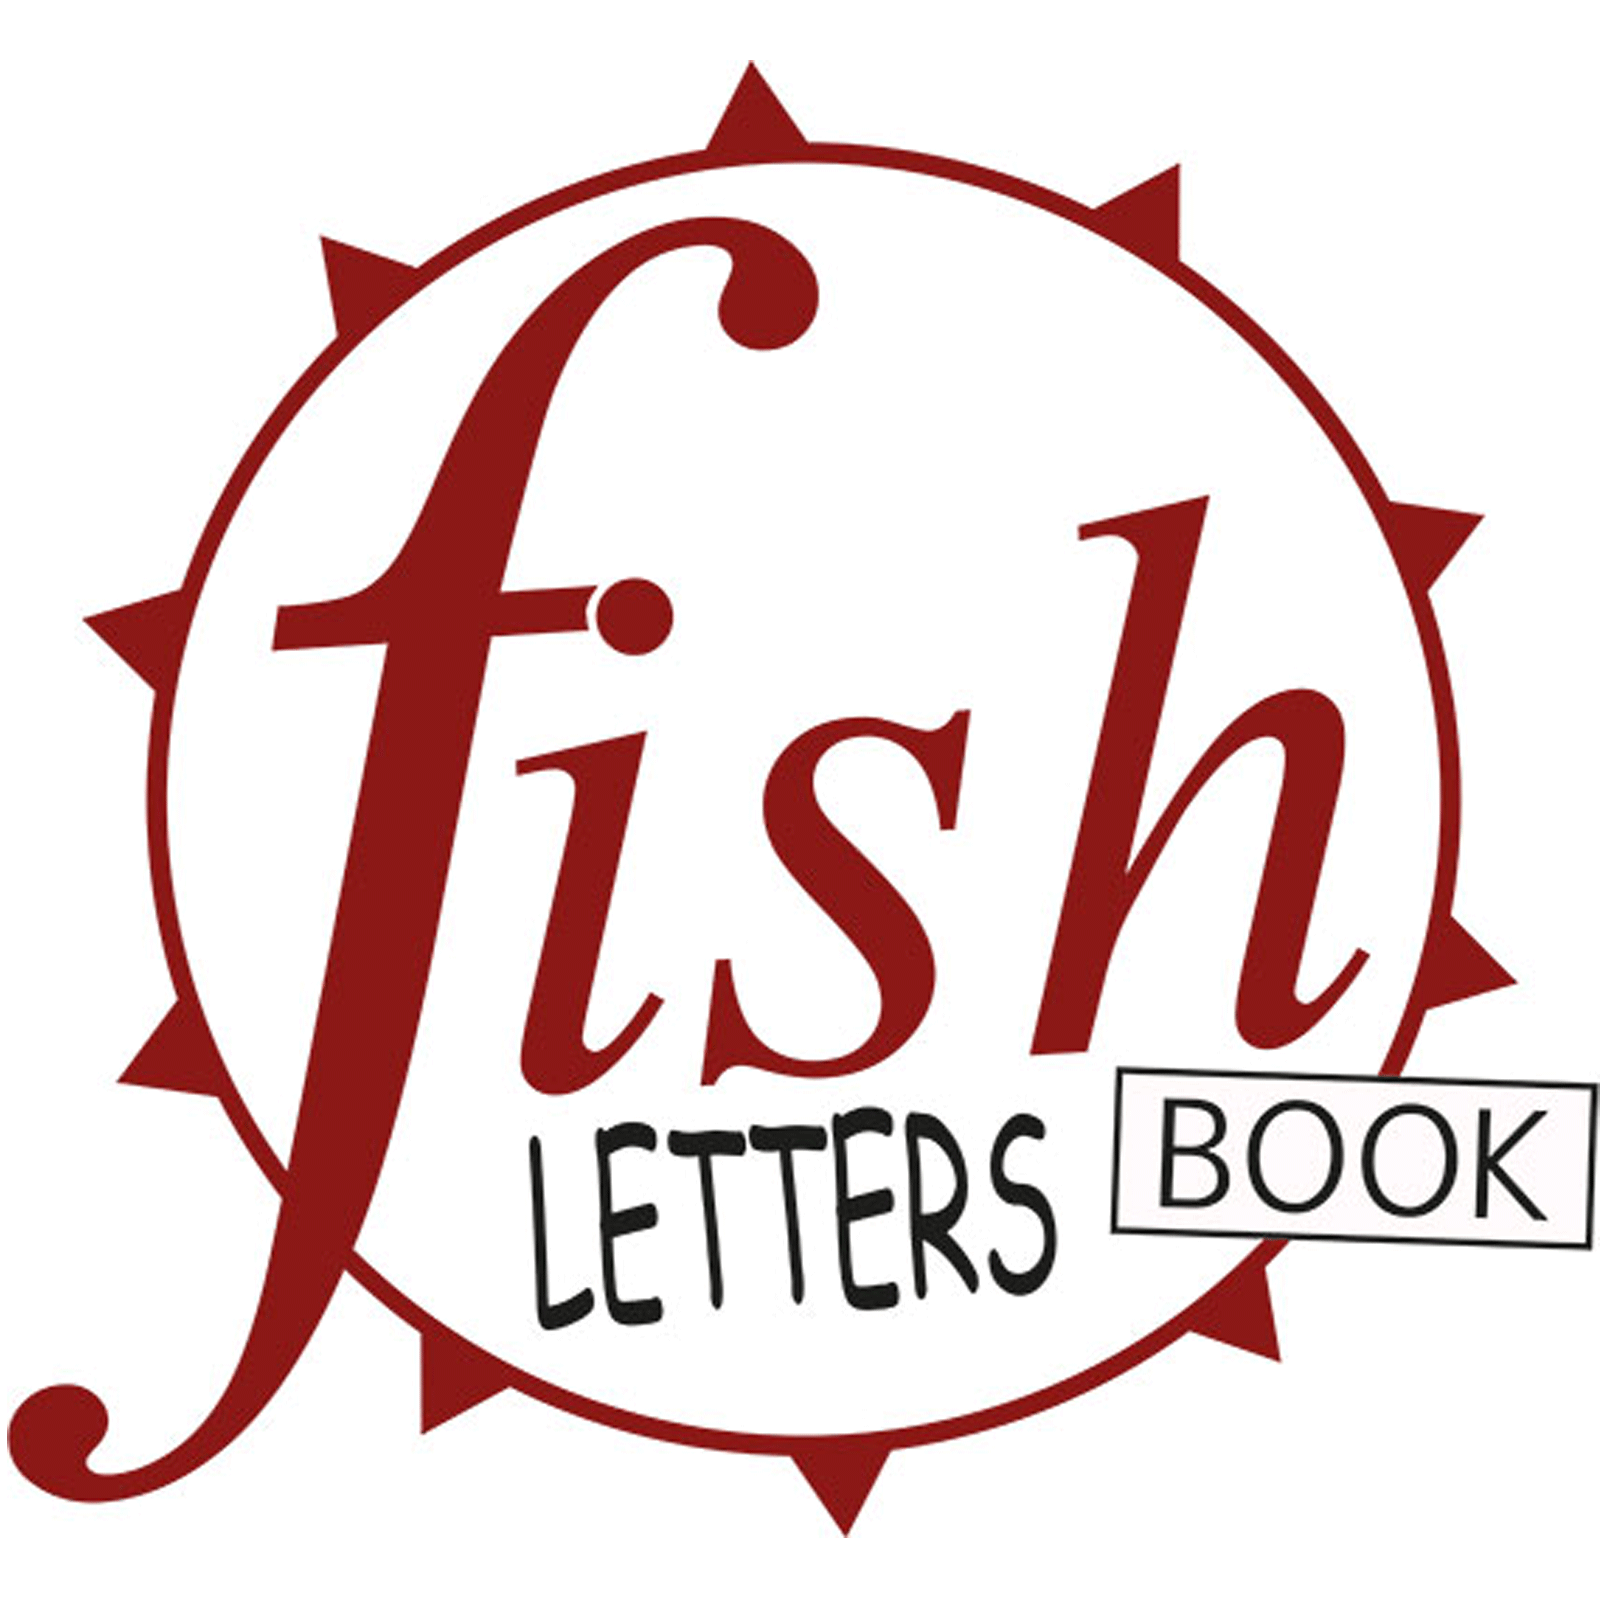 (c) Fishbookletters.de